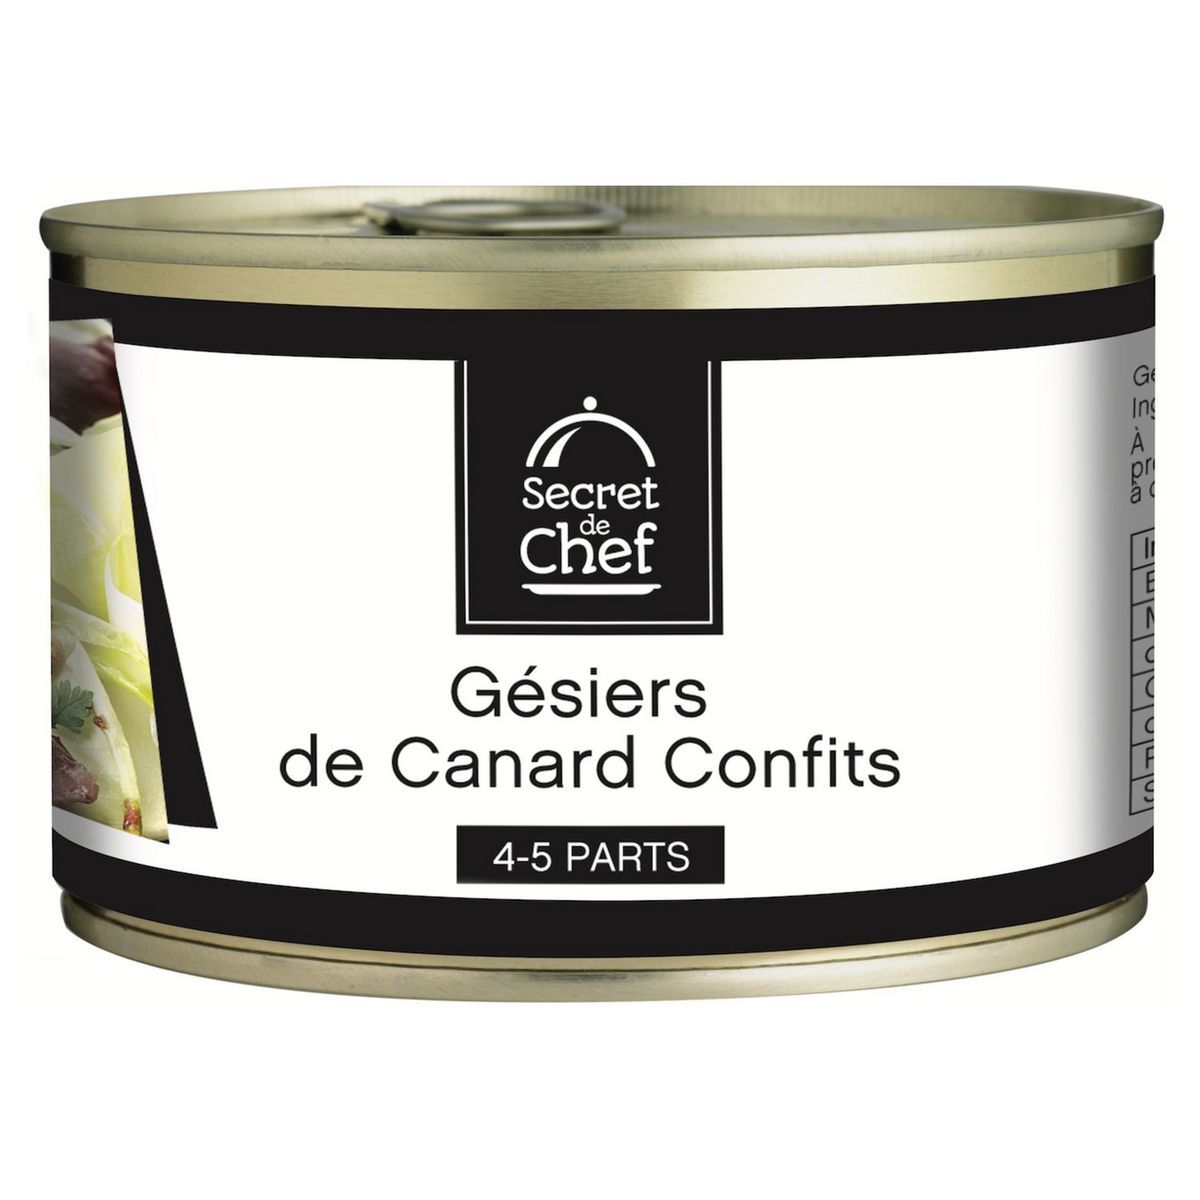 GÉSIERS DE CANARD CONFITS SECRET DE CHEF